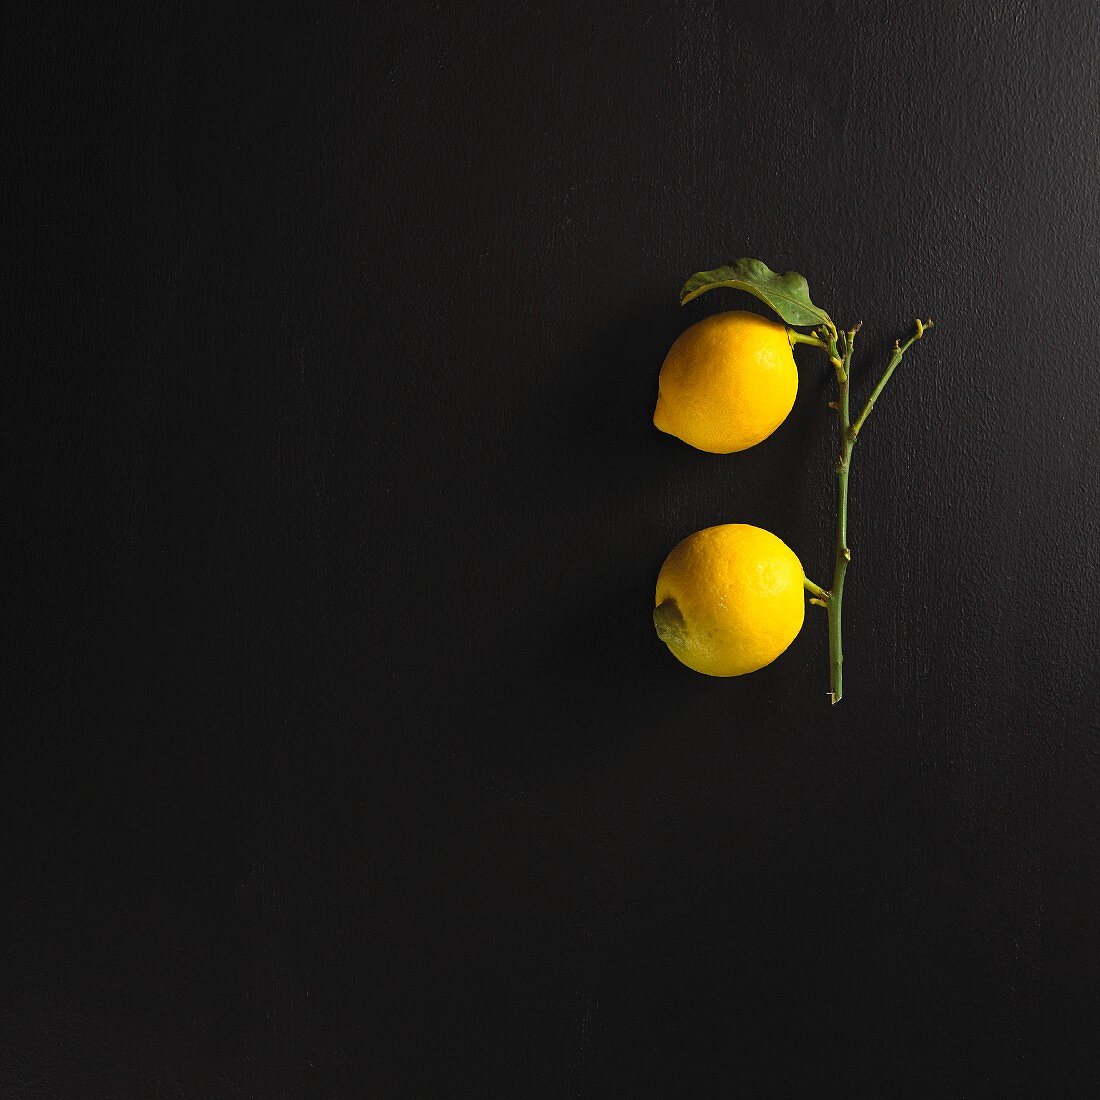 Two lemons on a stem with a leaf